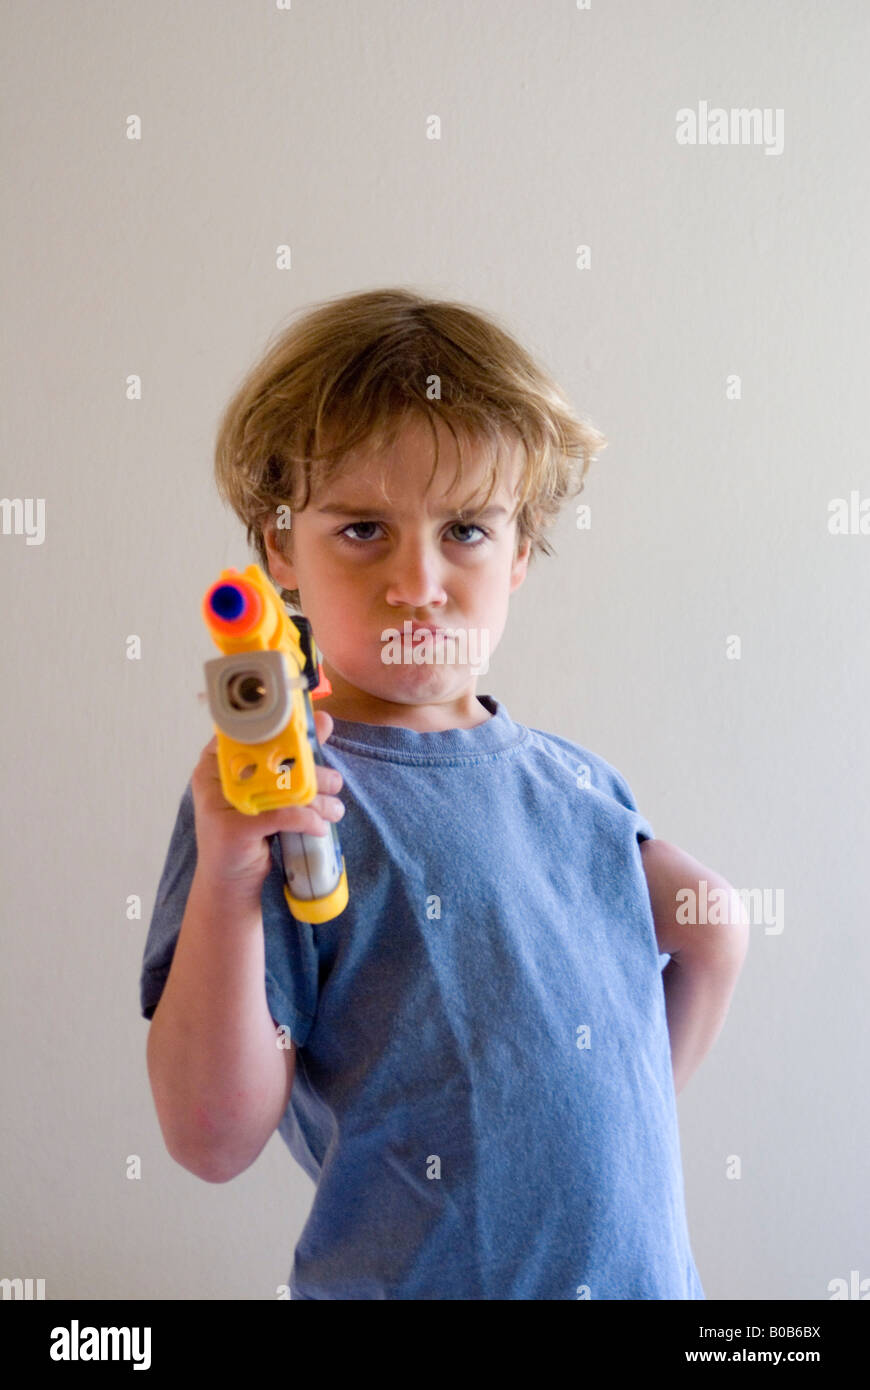 Boy with nerf gun Stock Photo